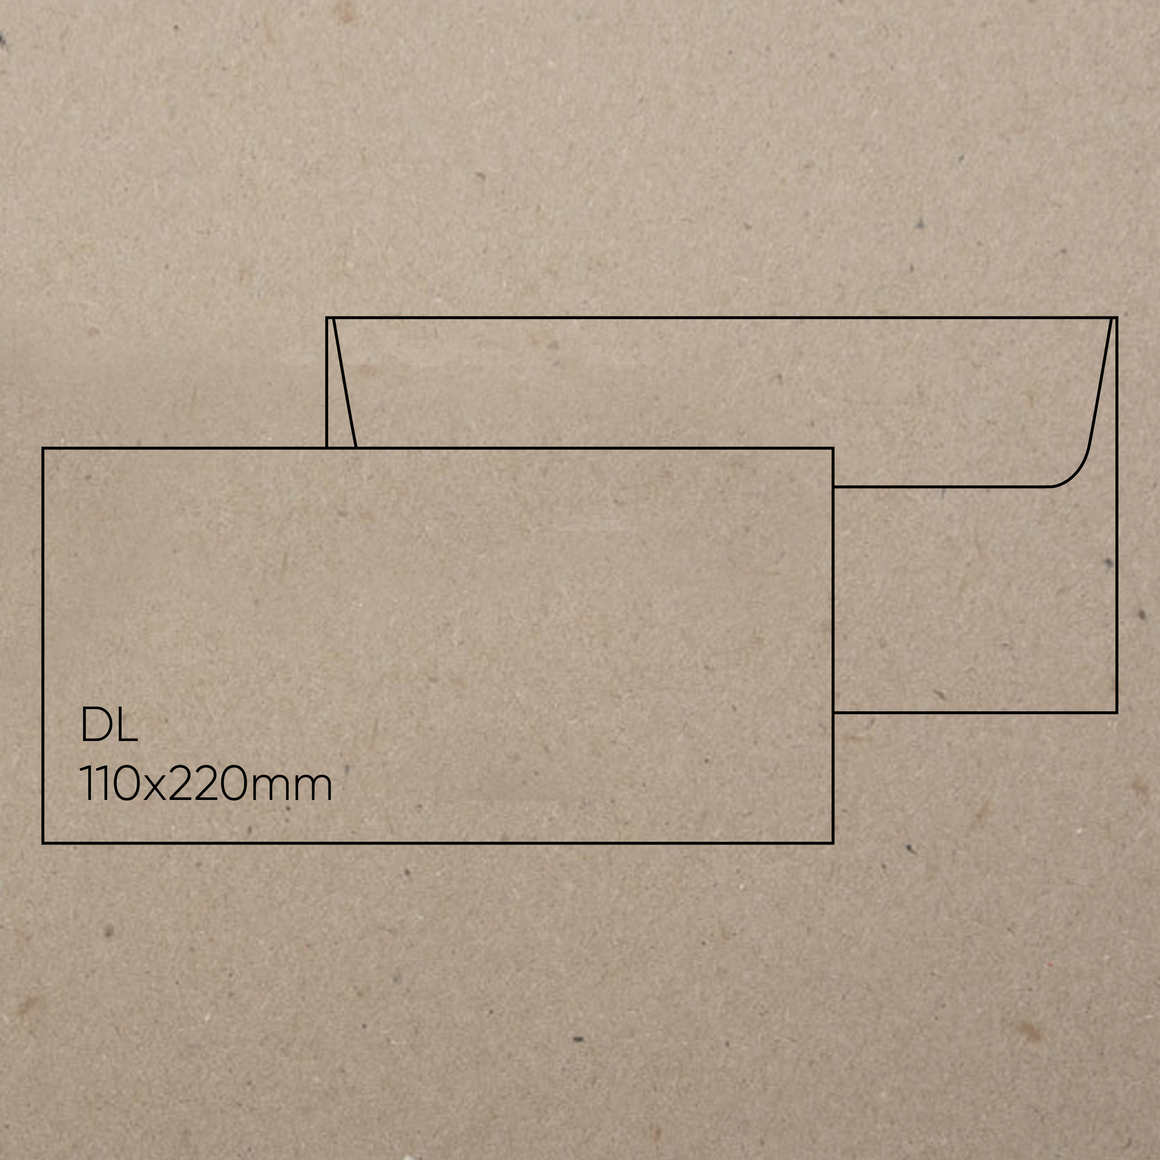 DL Envelope (110 x 220mm) - Botany Natural, Pack of 10